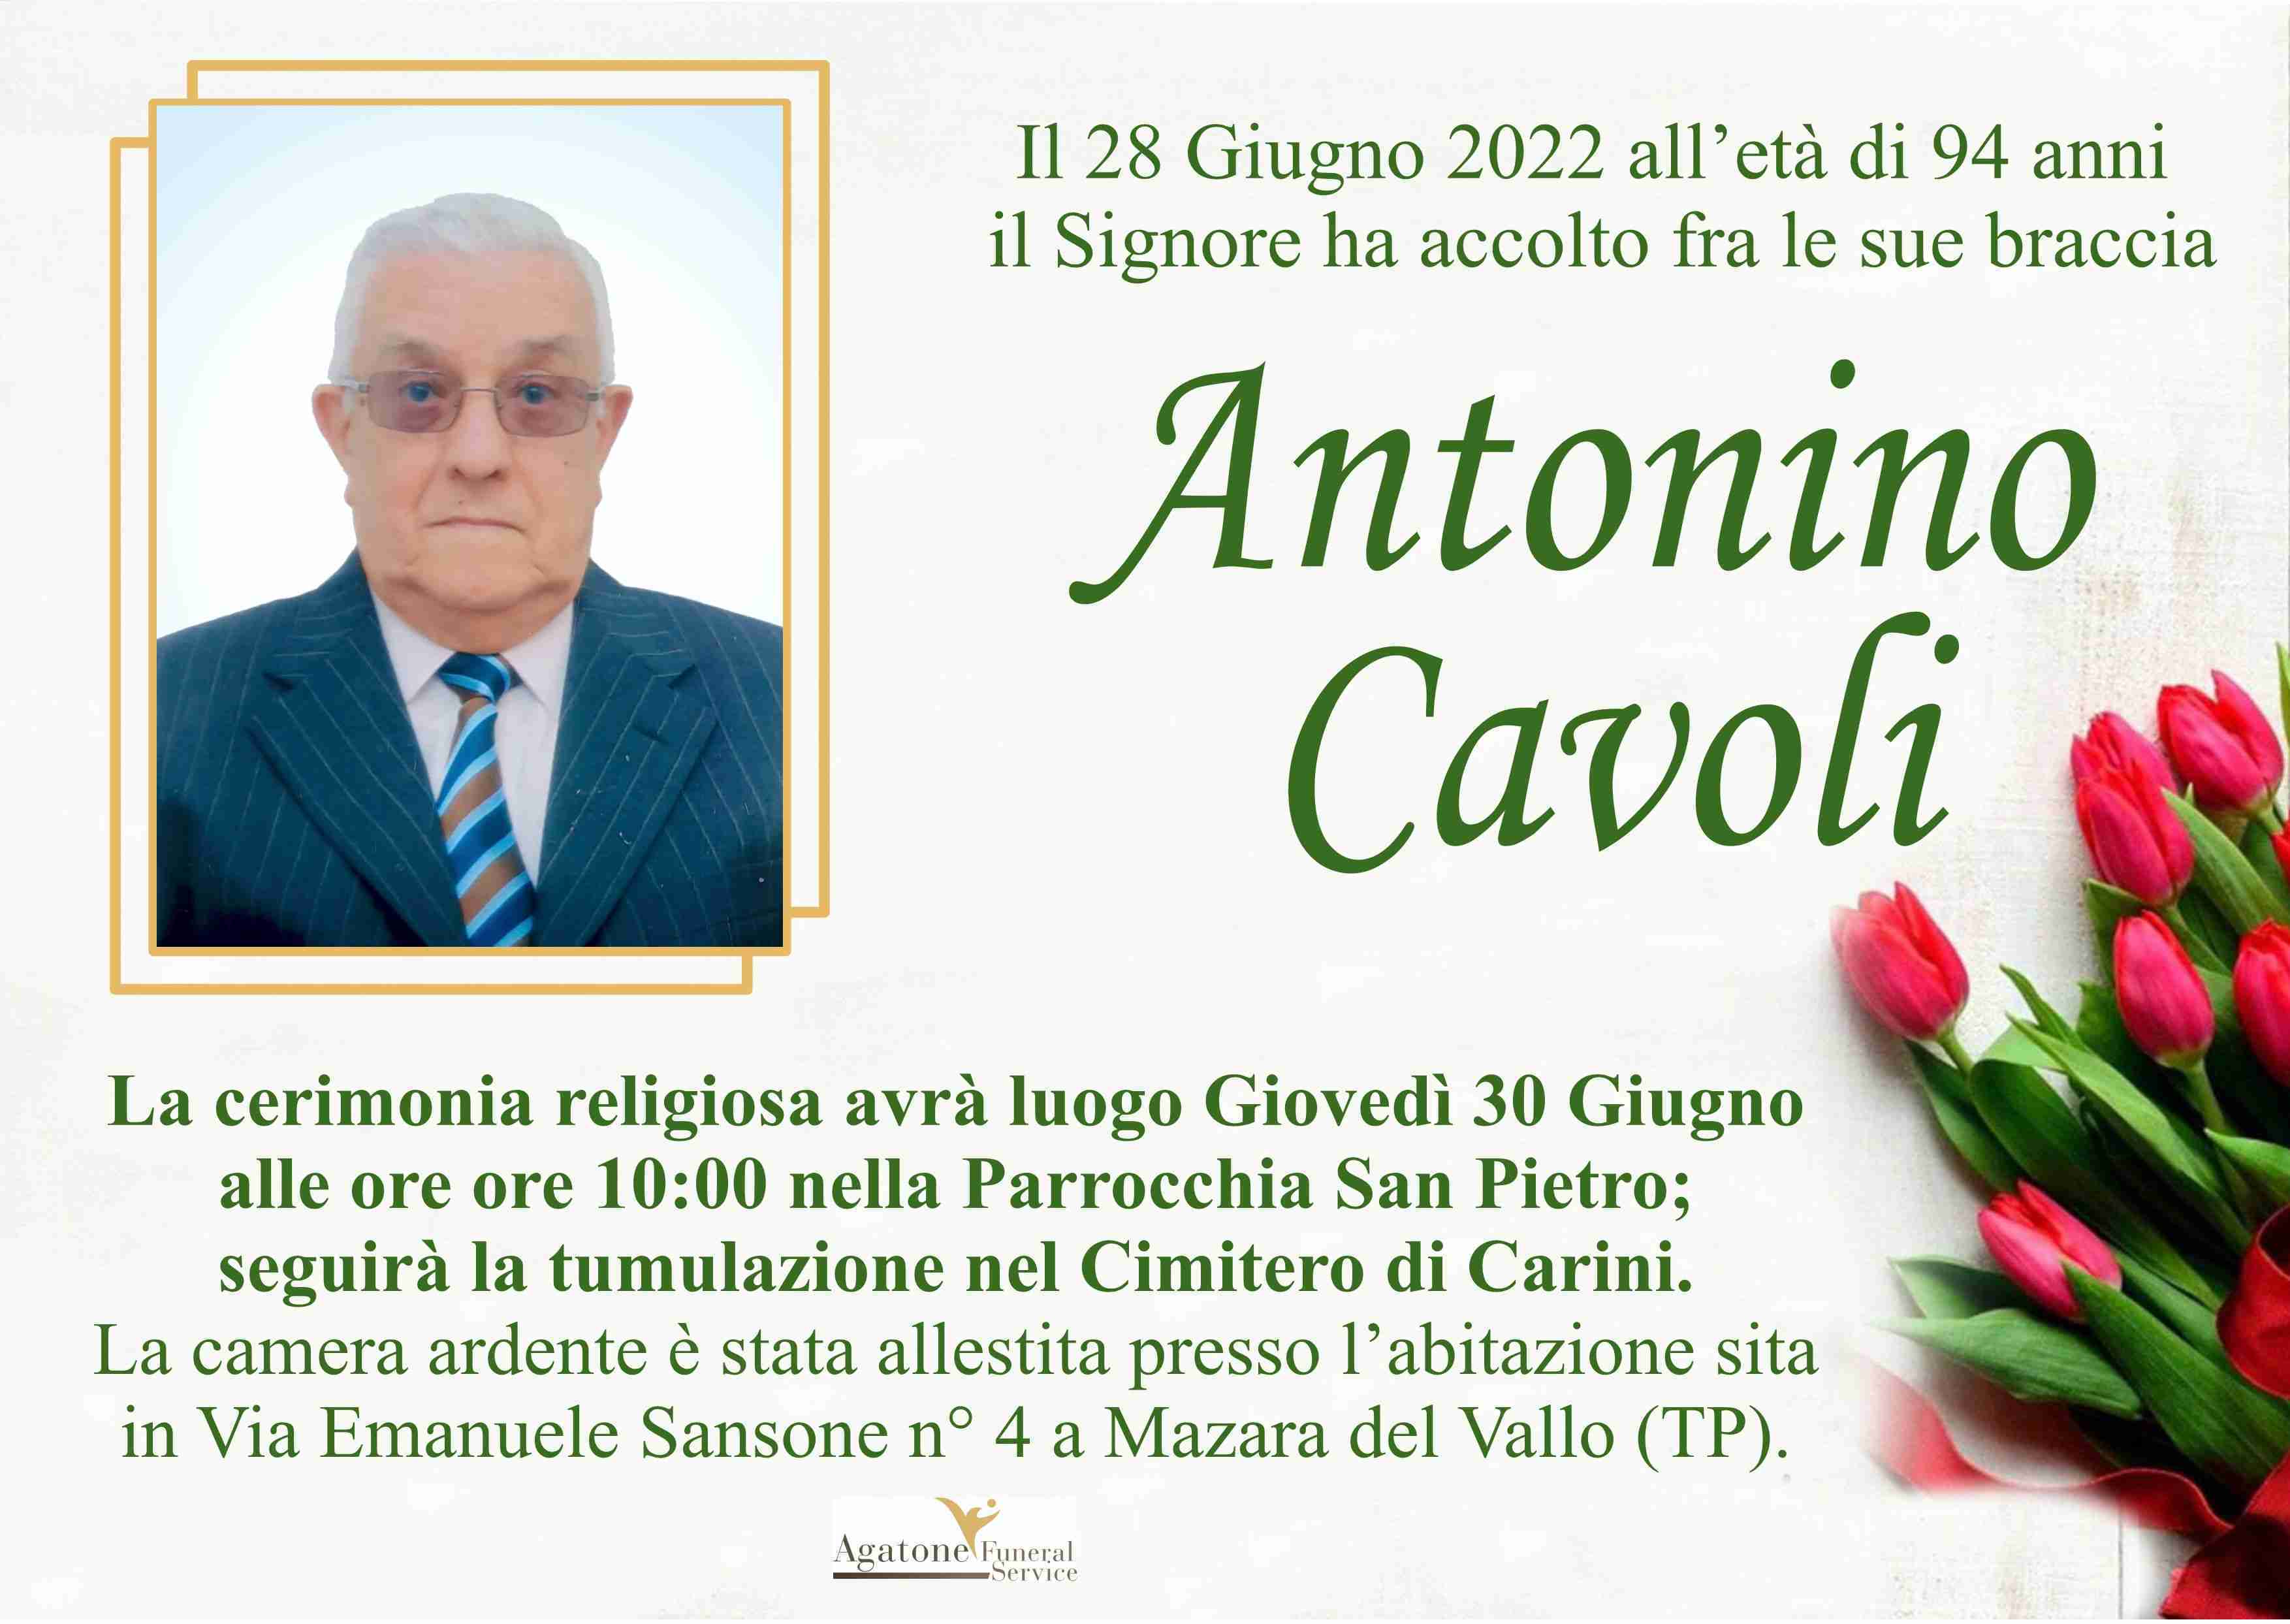 Antonino Cavoli